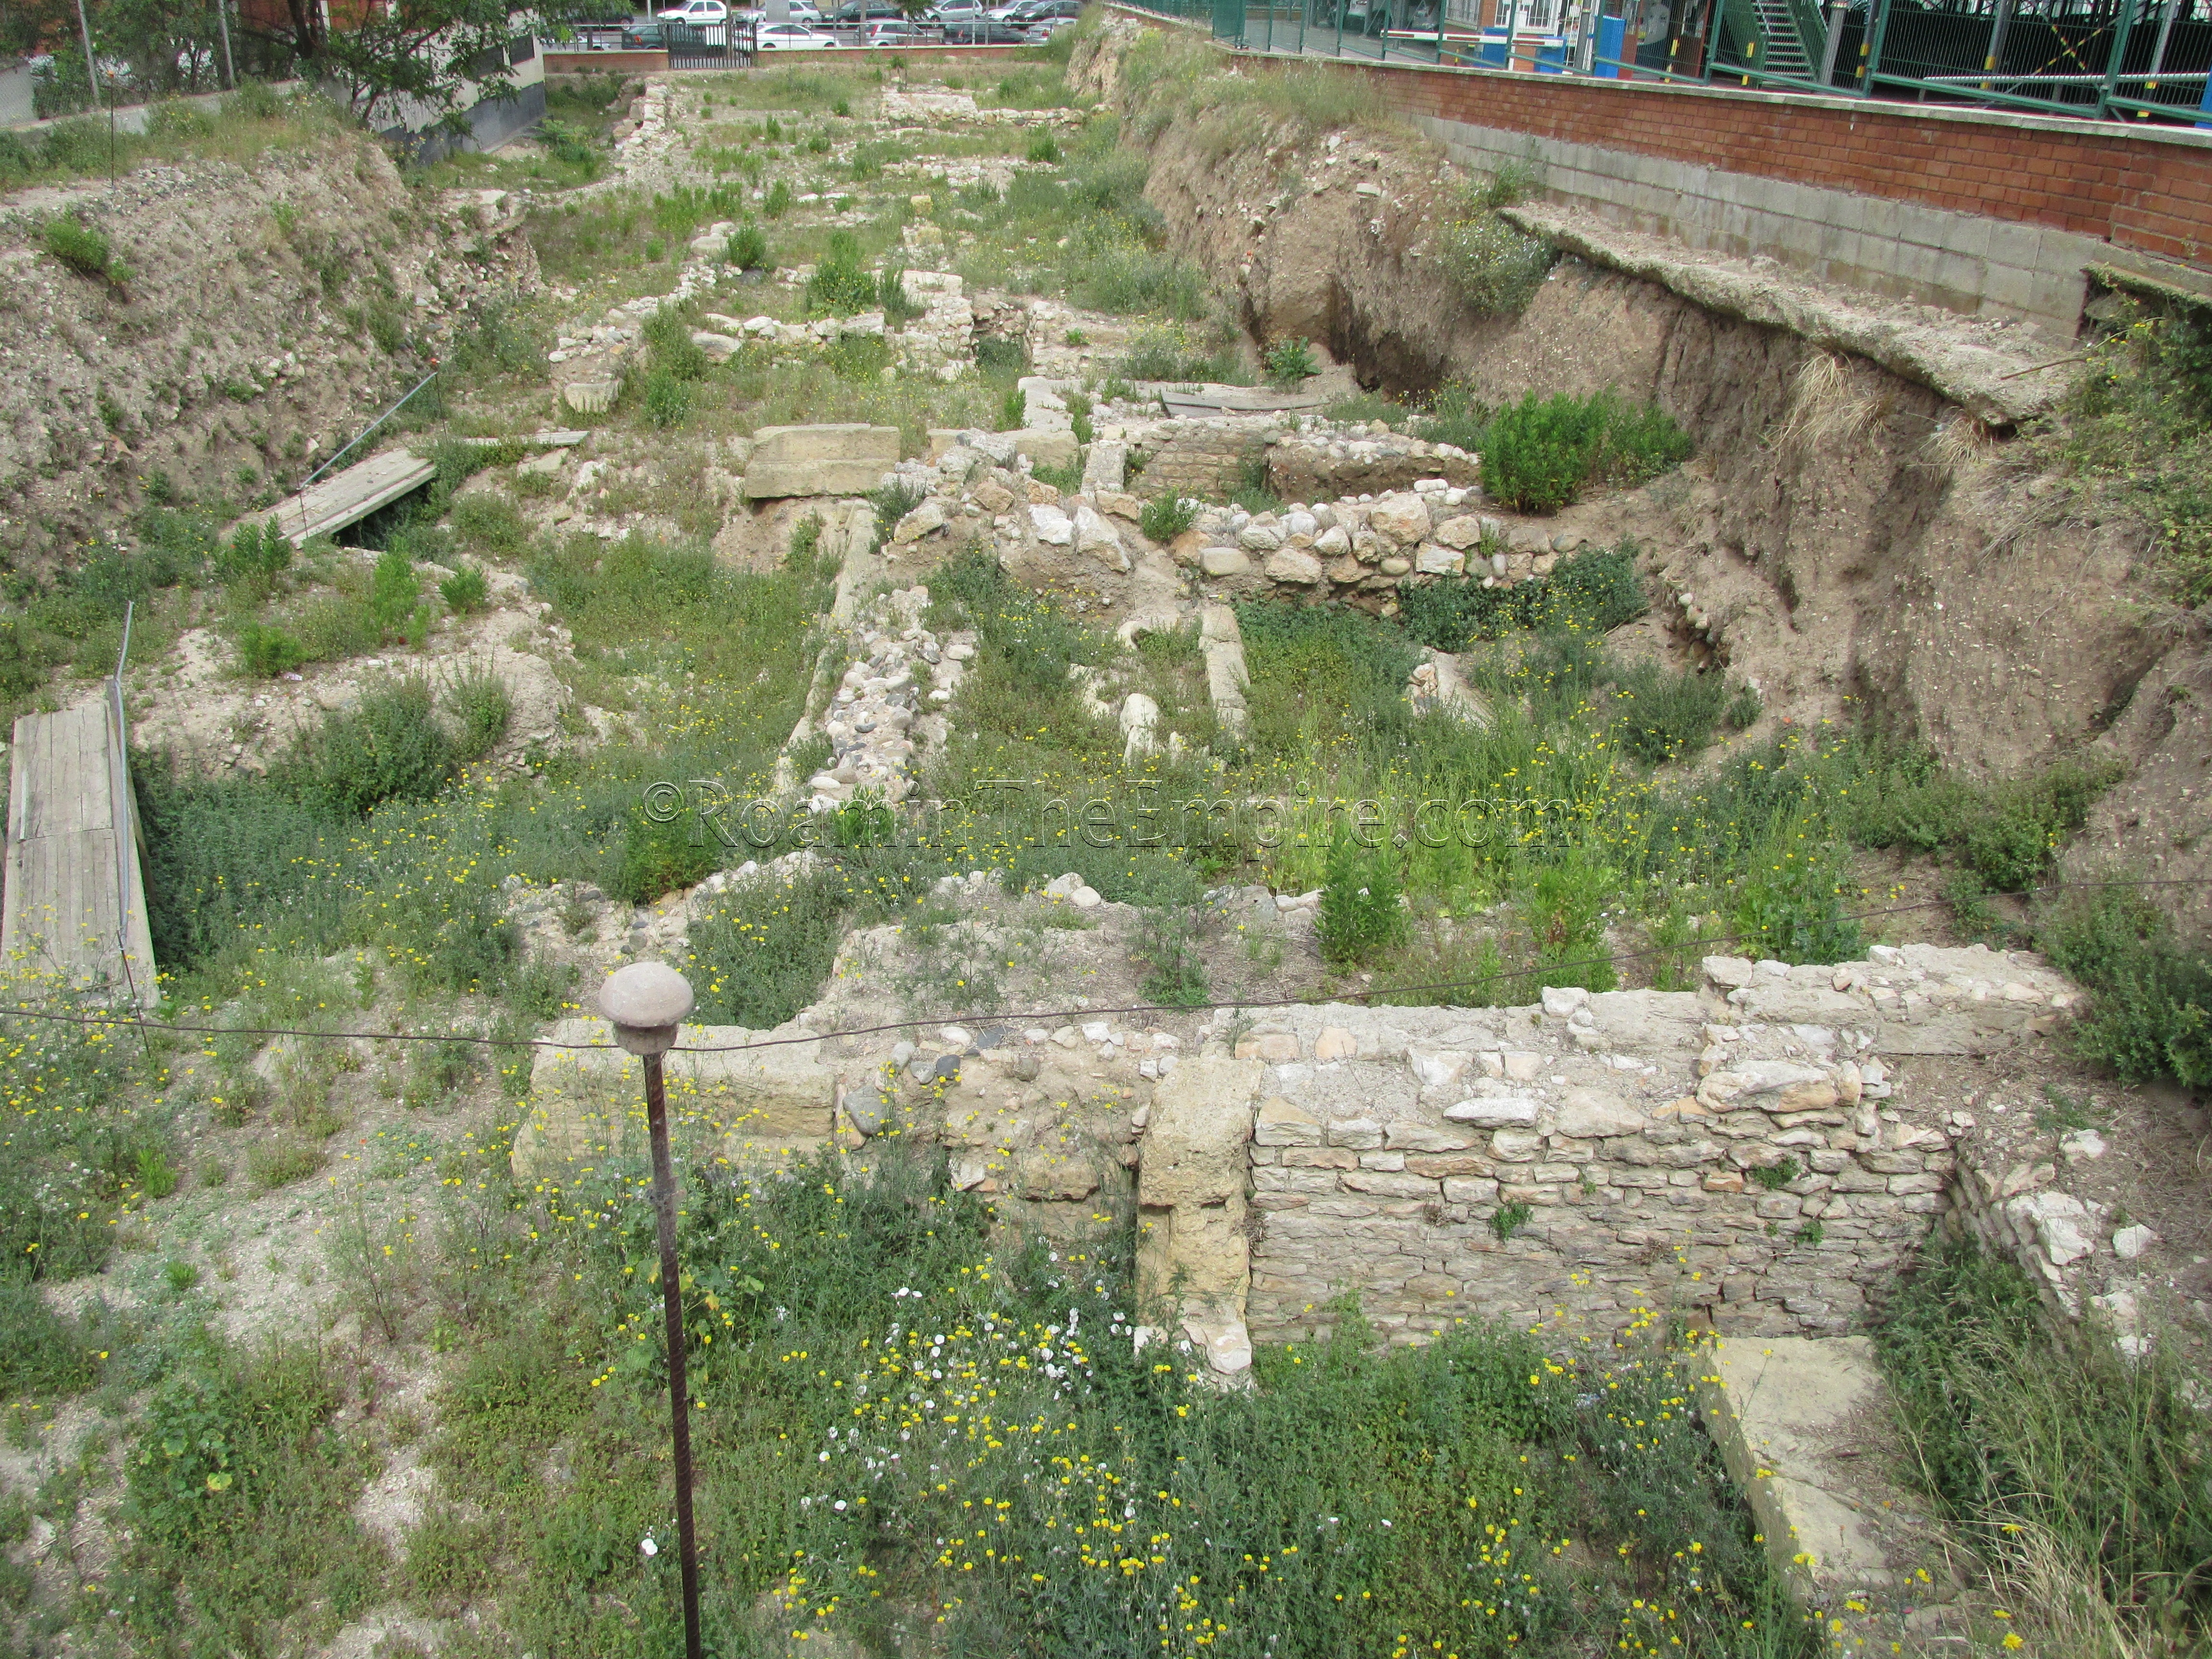 Reserva Arqueologica del Carrer d’Evissa.